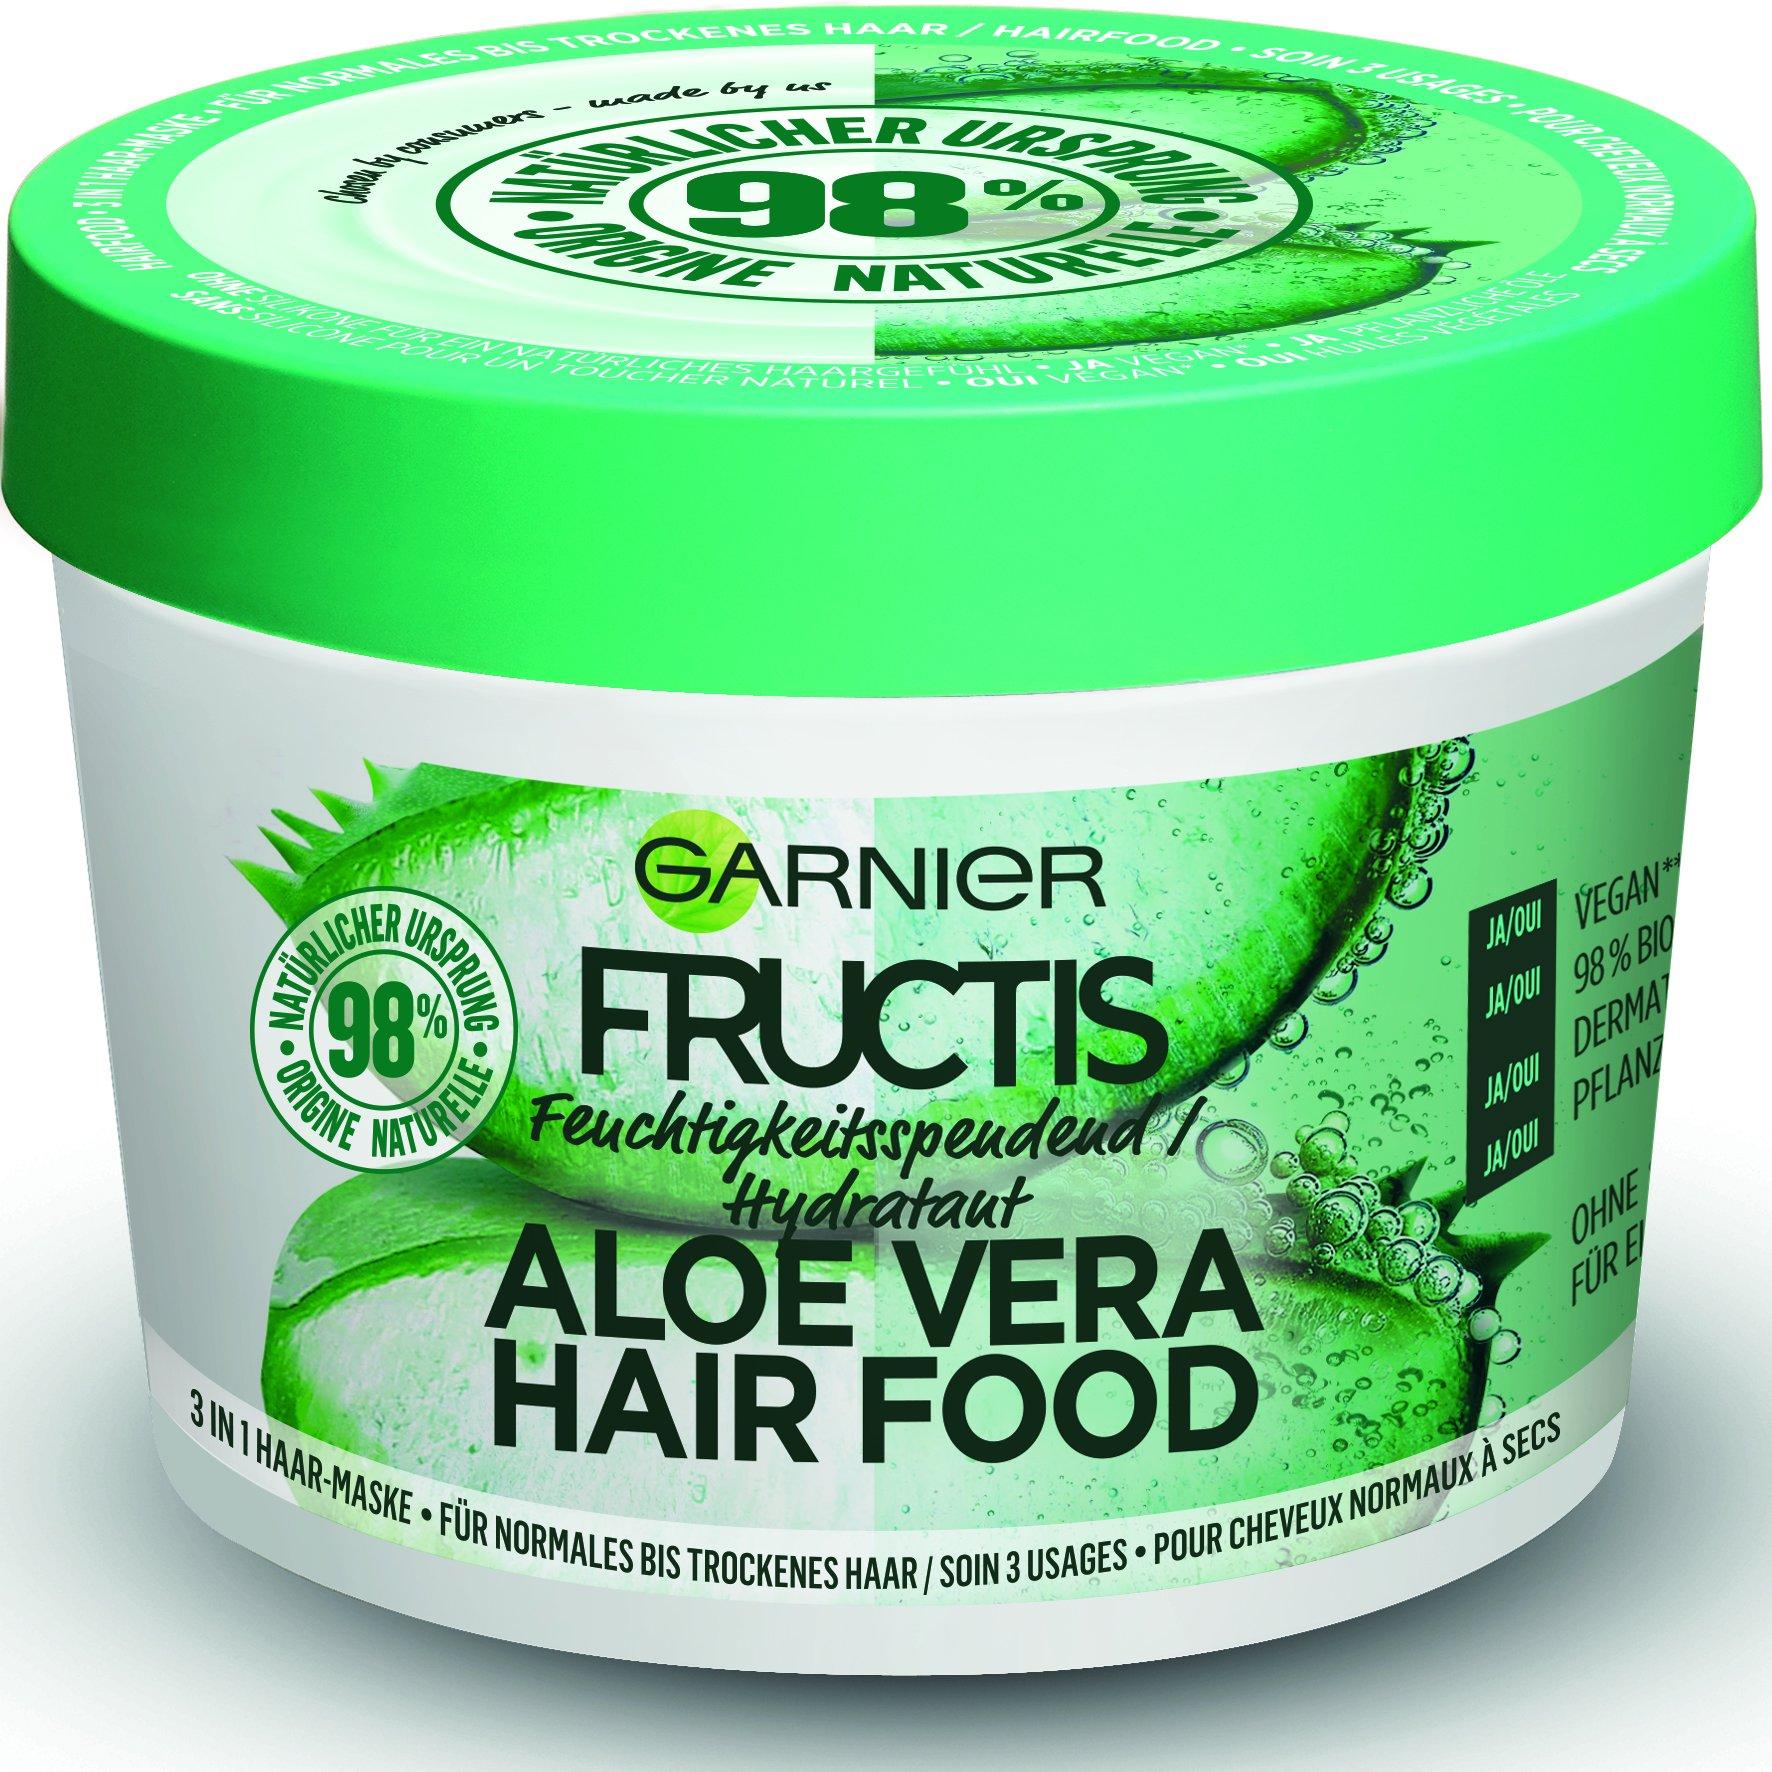 Image of FRUCTIS Hair Food Aloe Vera Fructis Aloe Vera Hair Food 3 in 1 Haar Maske - 390ml